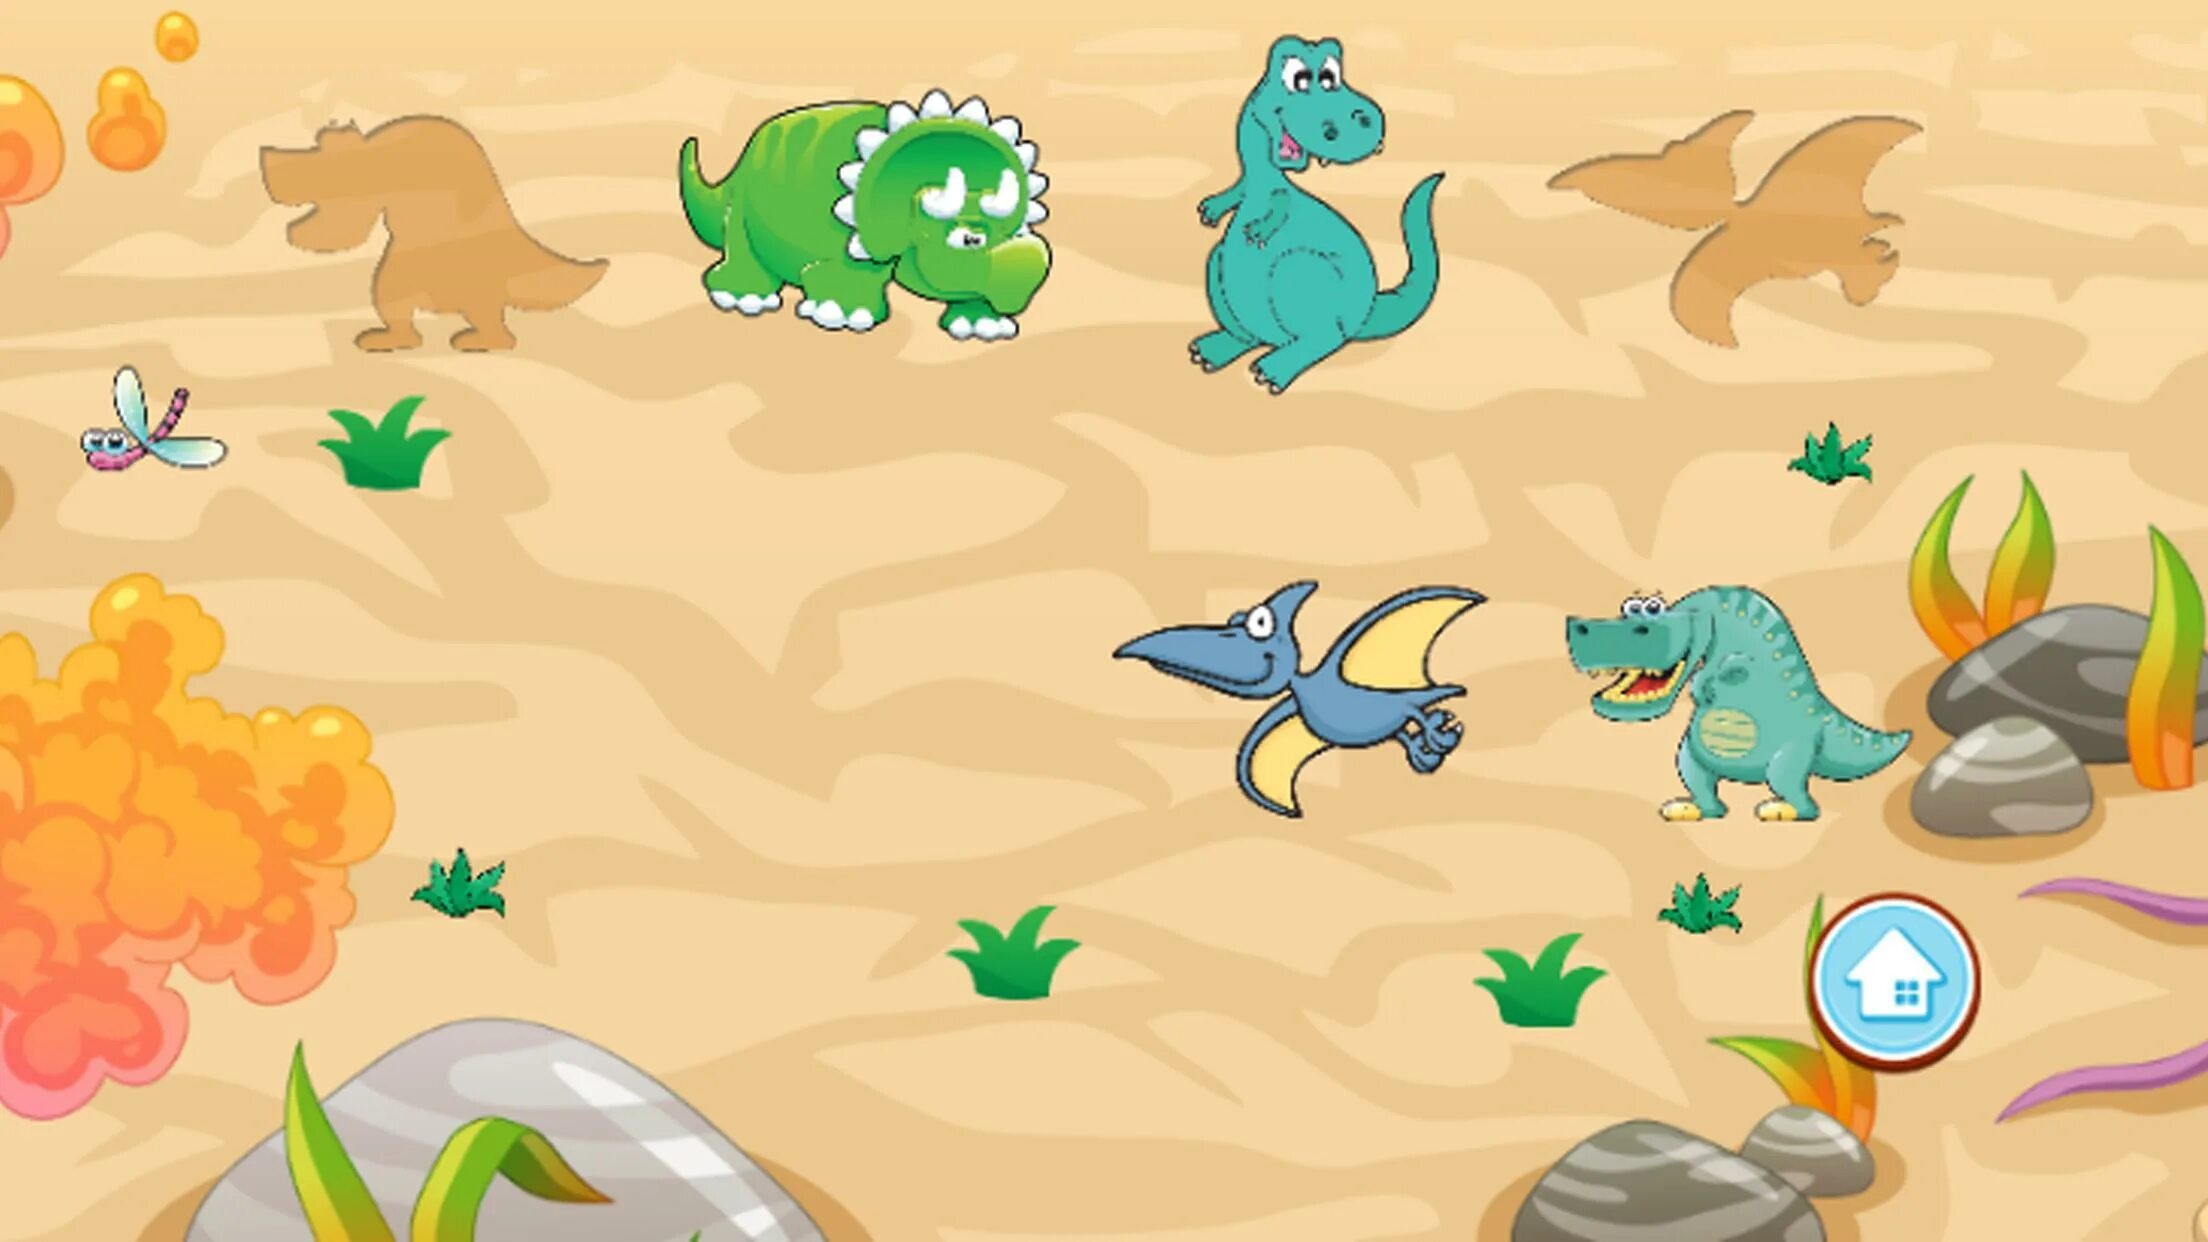 Игра Динозаврики игра Динозаврики игра Динозаврики игра Динозаврики. Развивающие игры динозавры. Головоломки с динозаврами. Игры с динозавриками для малышей. Зеленый динозавр игры